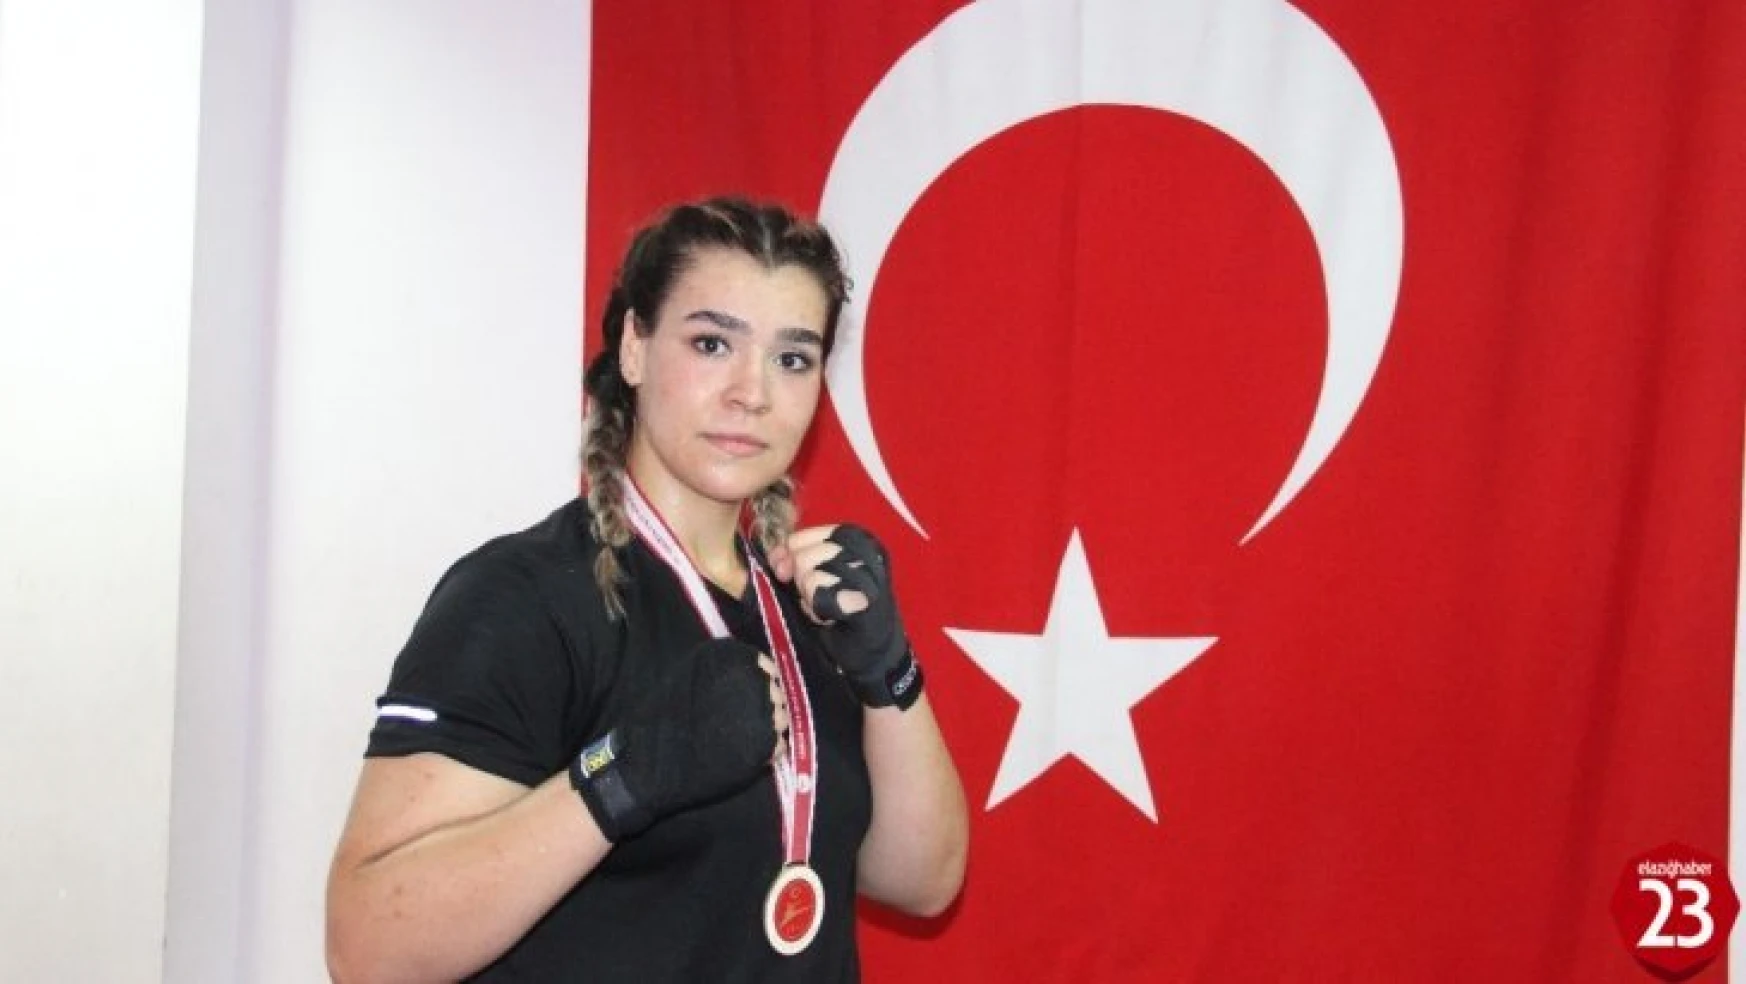 Kick Boksçu Mihriban, İkinci Kez Avrupa Şampiyonu Olmak İstiyor